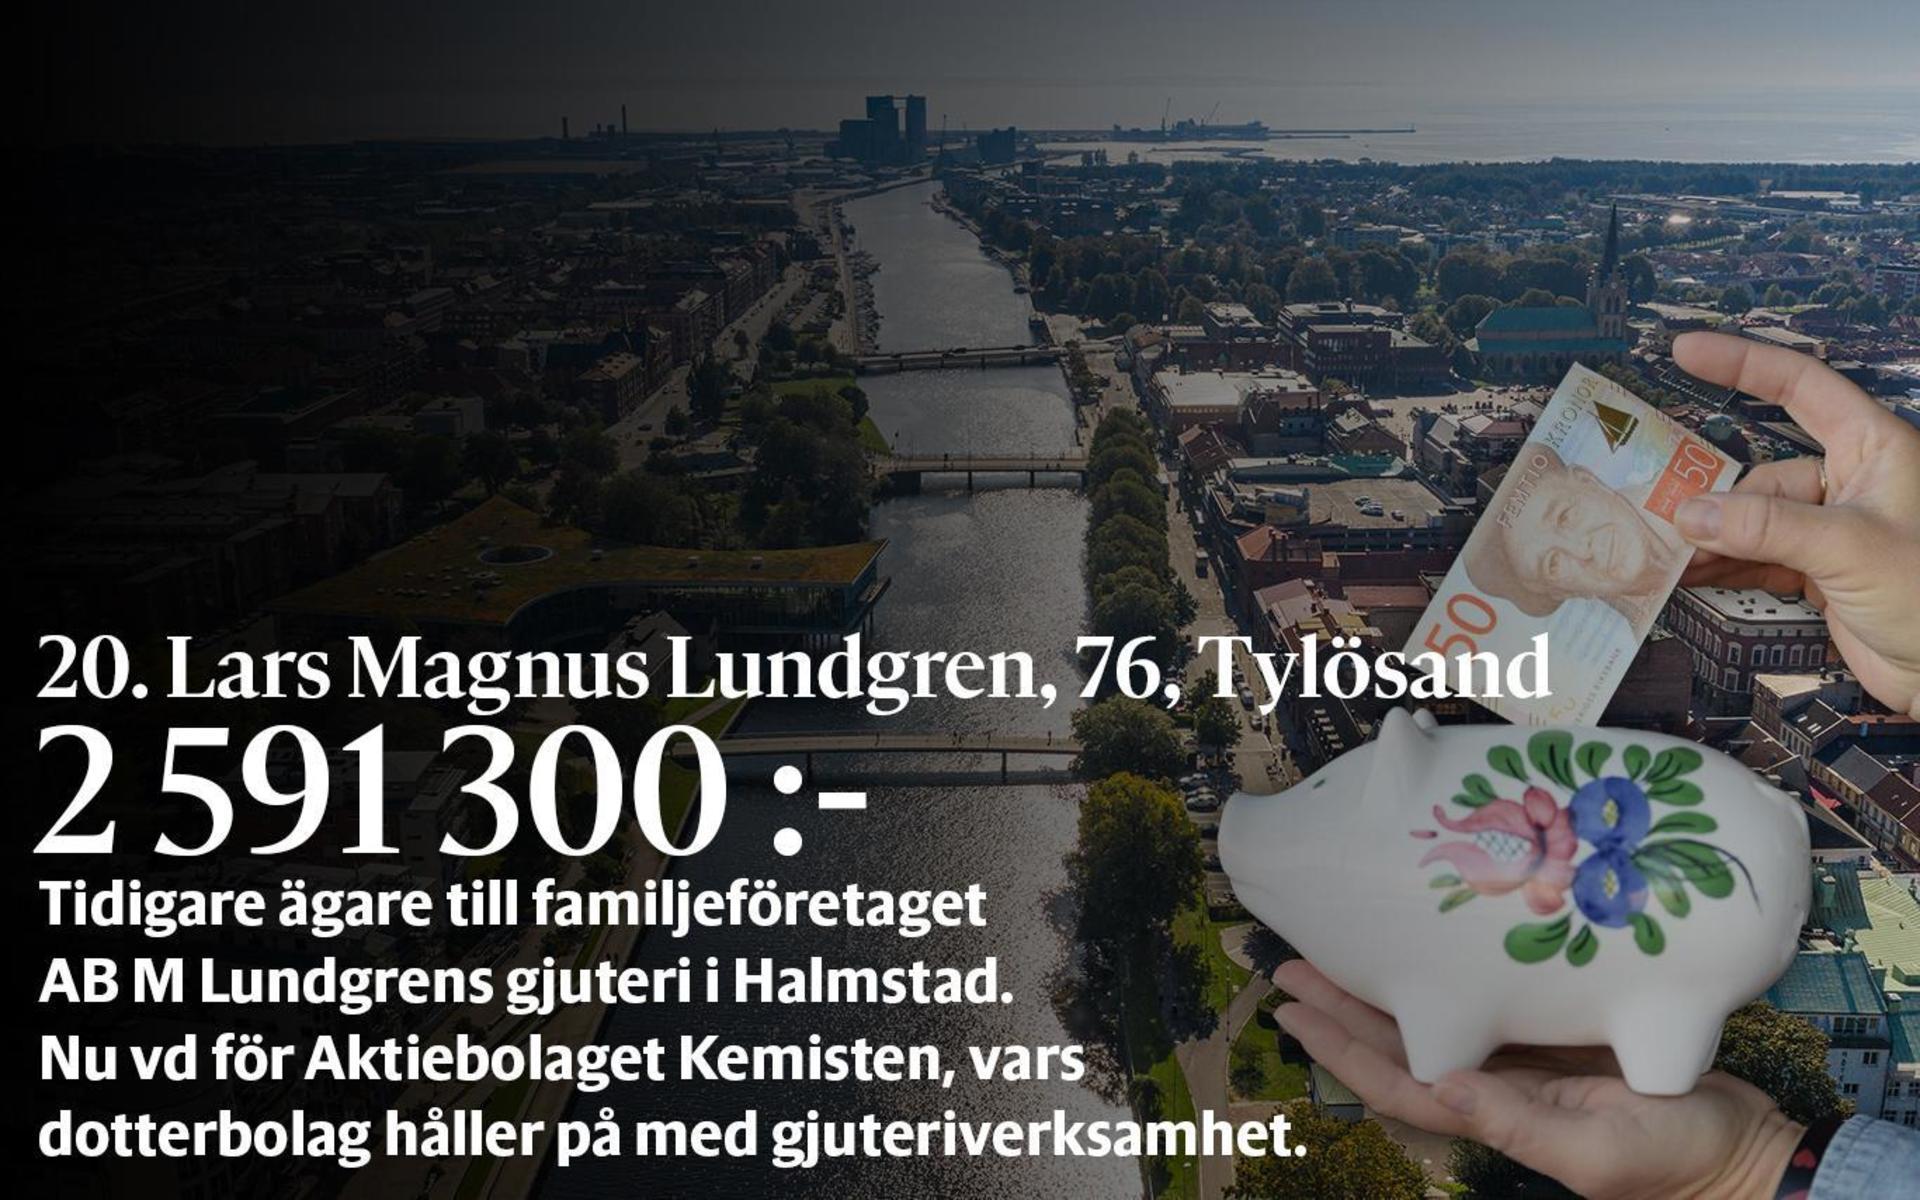 20. Lars Magnus Lundgren, fastställd förvärvsinkomst på 2 591 300 kronor och inkomst av kapital på 1 408 651 kronor placerar honom på plats 66 i den totala inkomstligan i Halmstad.